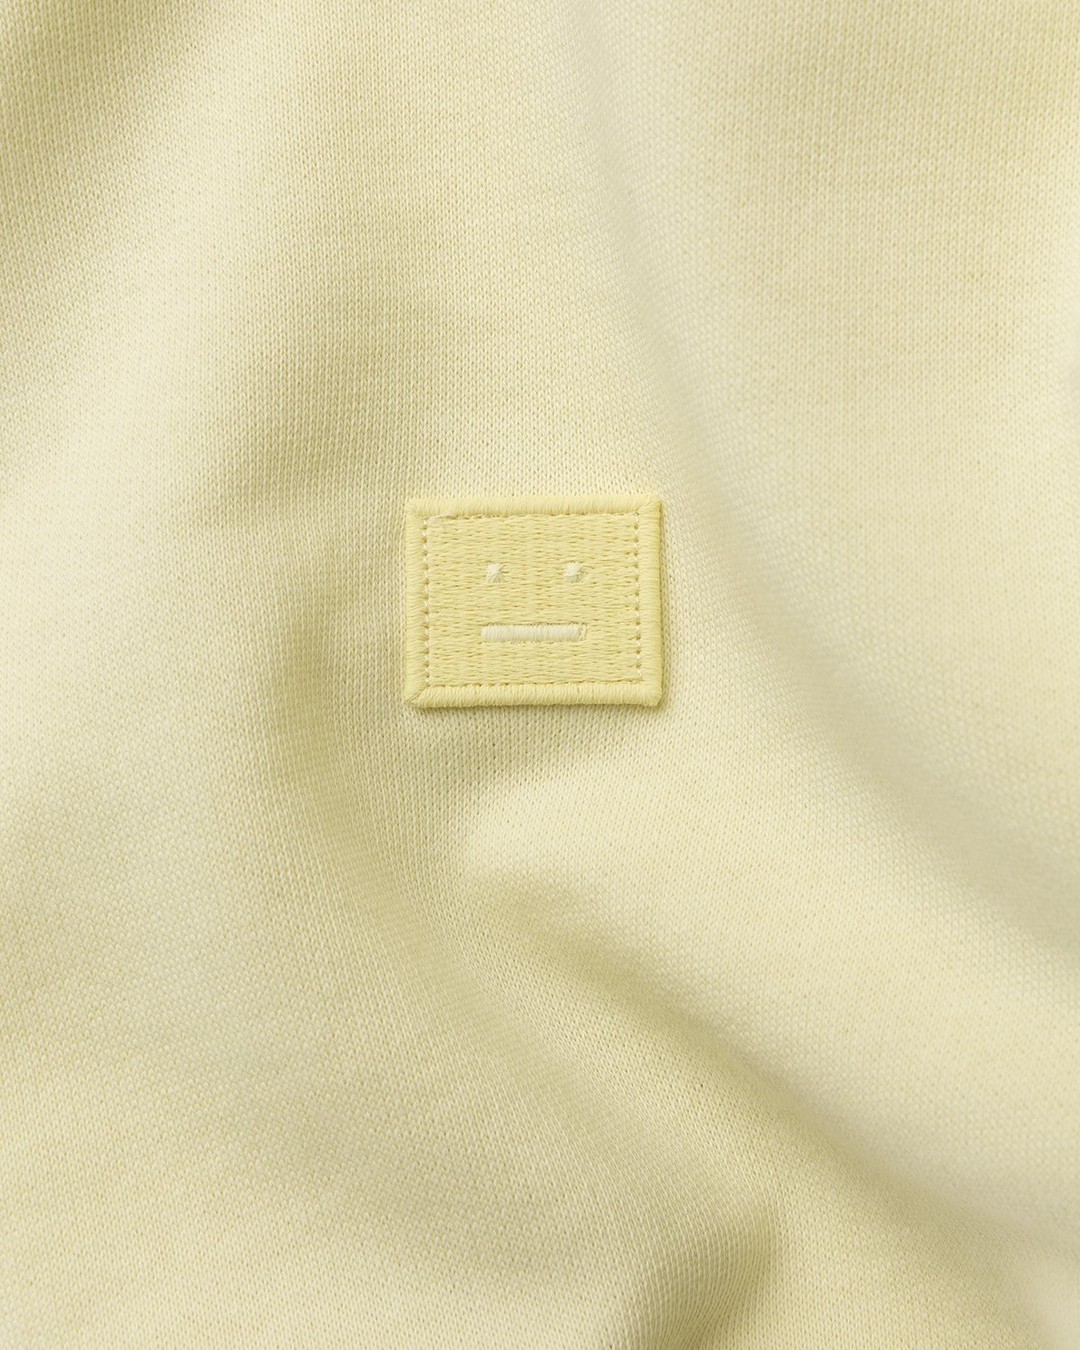 Acne Studios – Organic Cotton Hooded Sweatshirt Vanilla Yellow - Hoodies - Yellow - Image 4